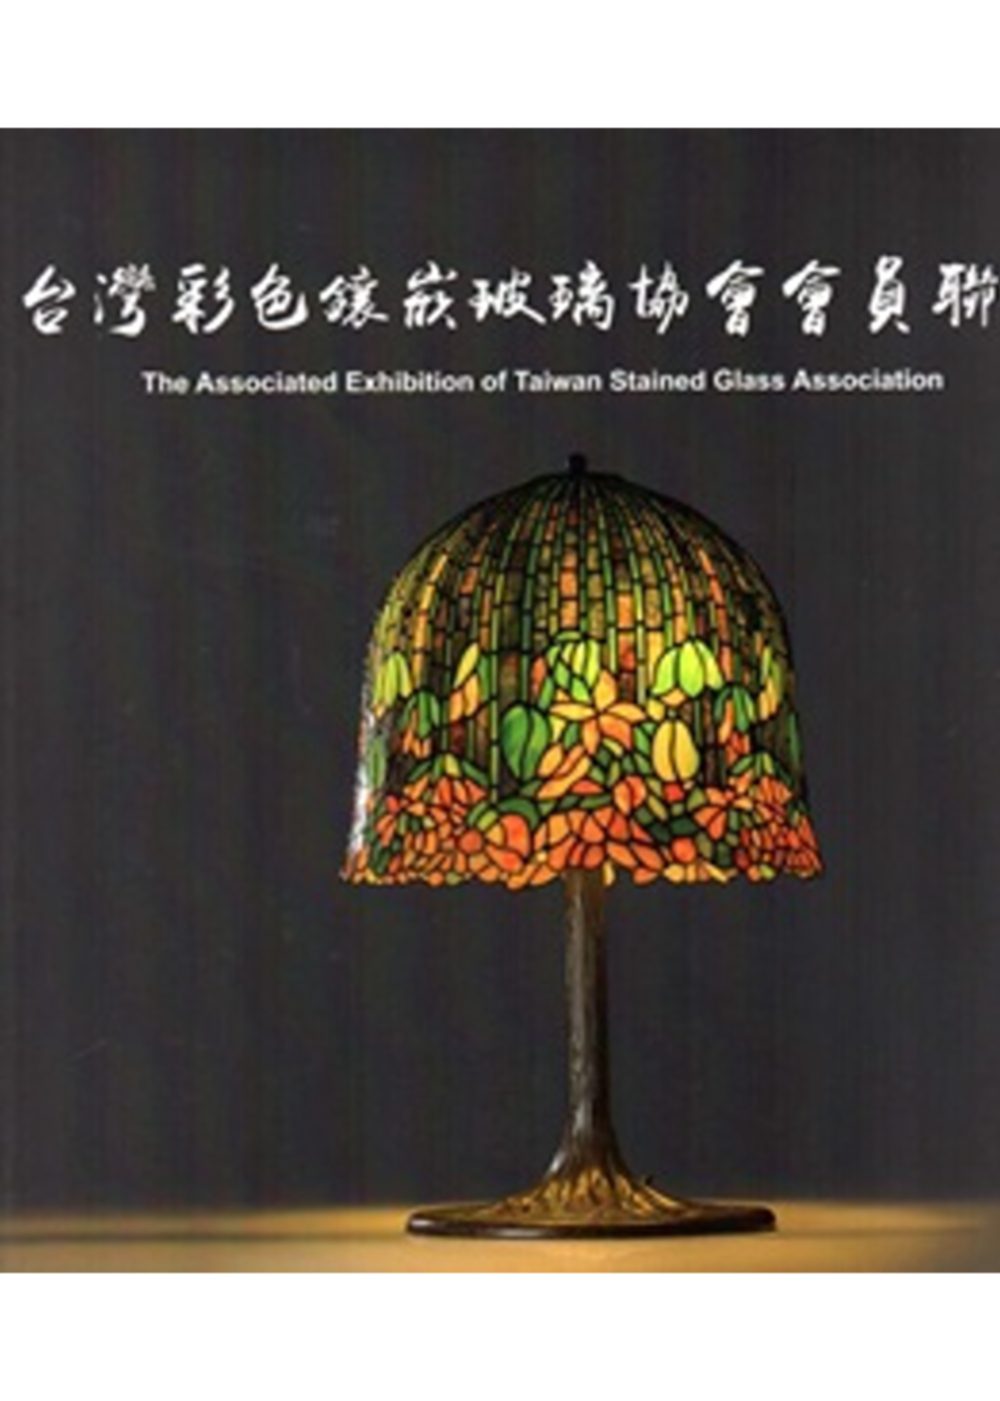 台灣彩色鑲嵌玻璃協會會員聯展